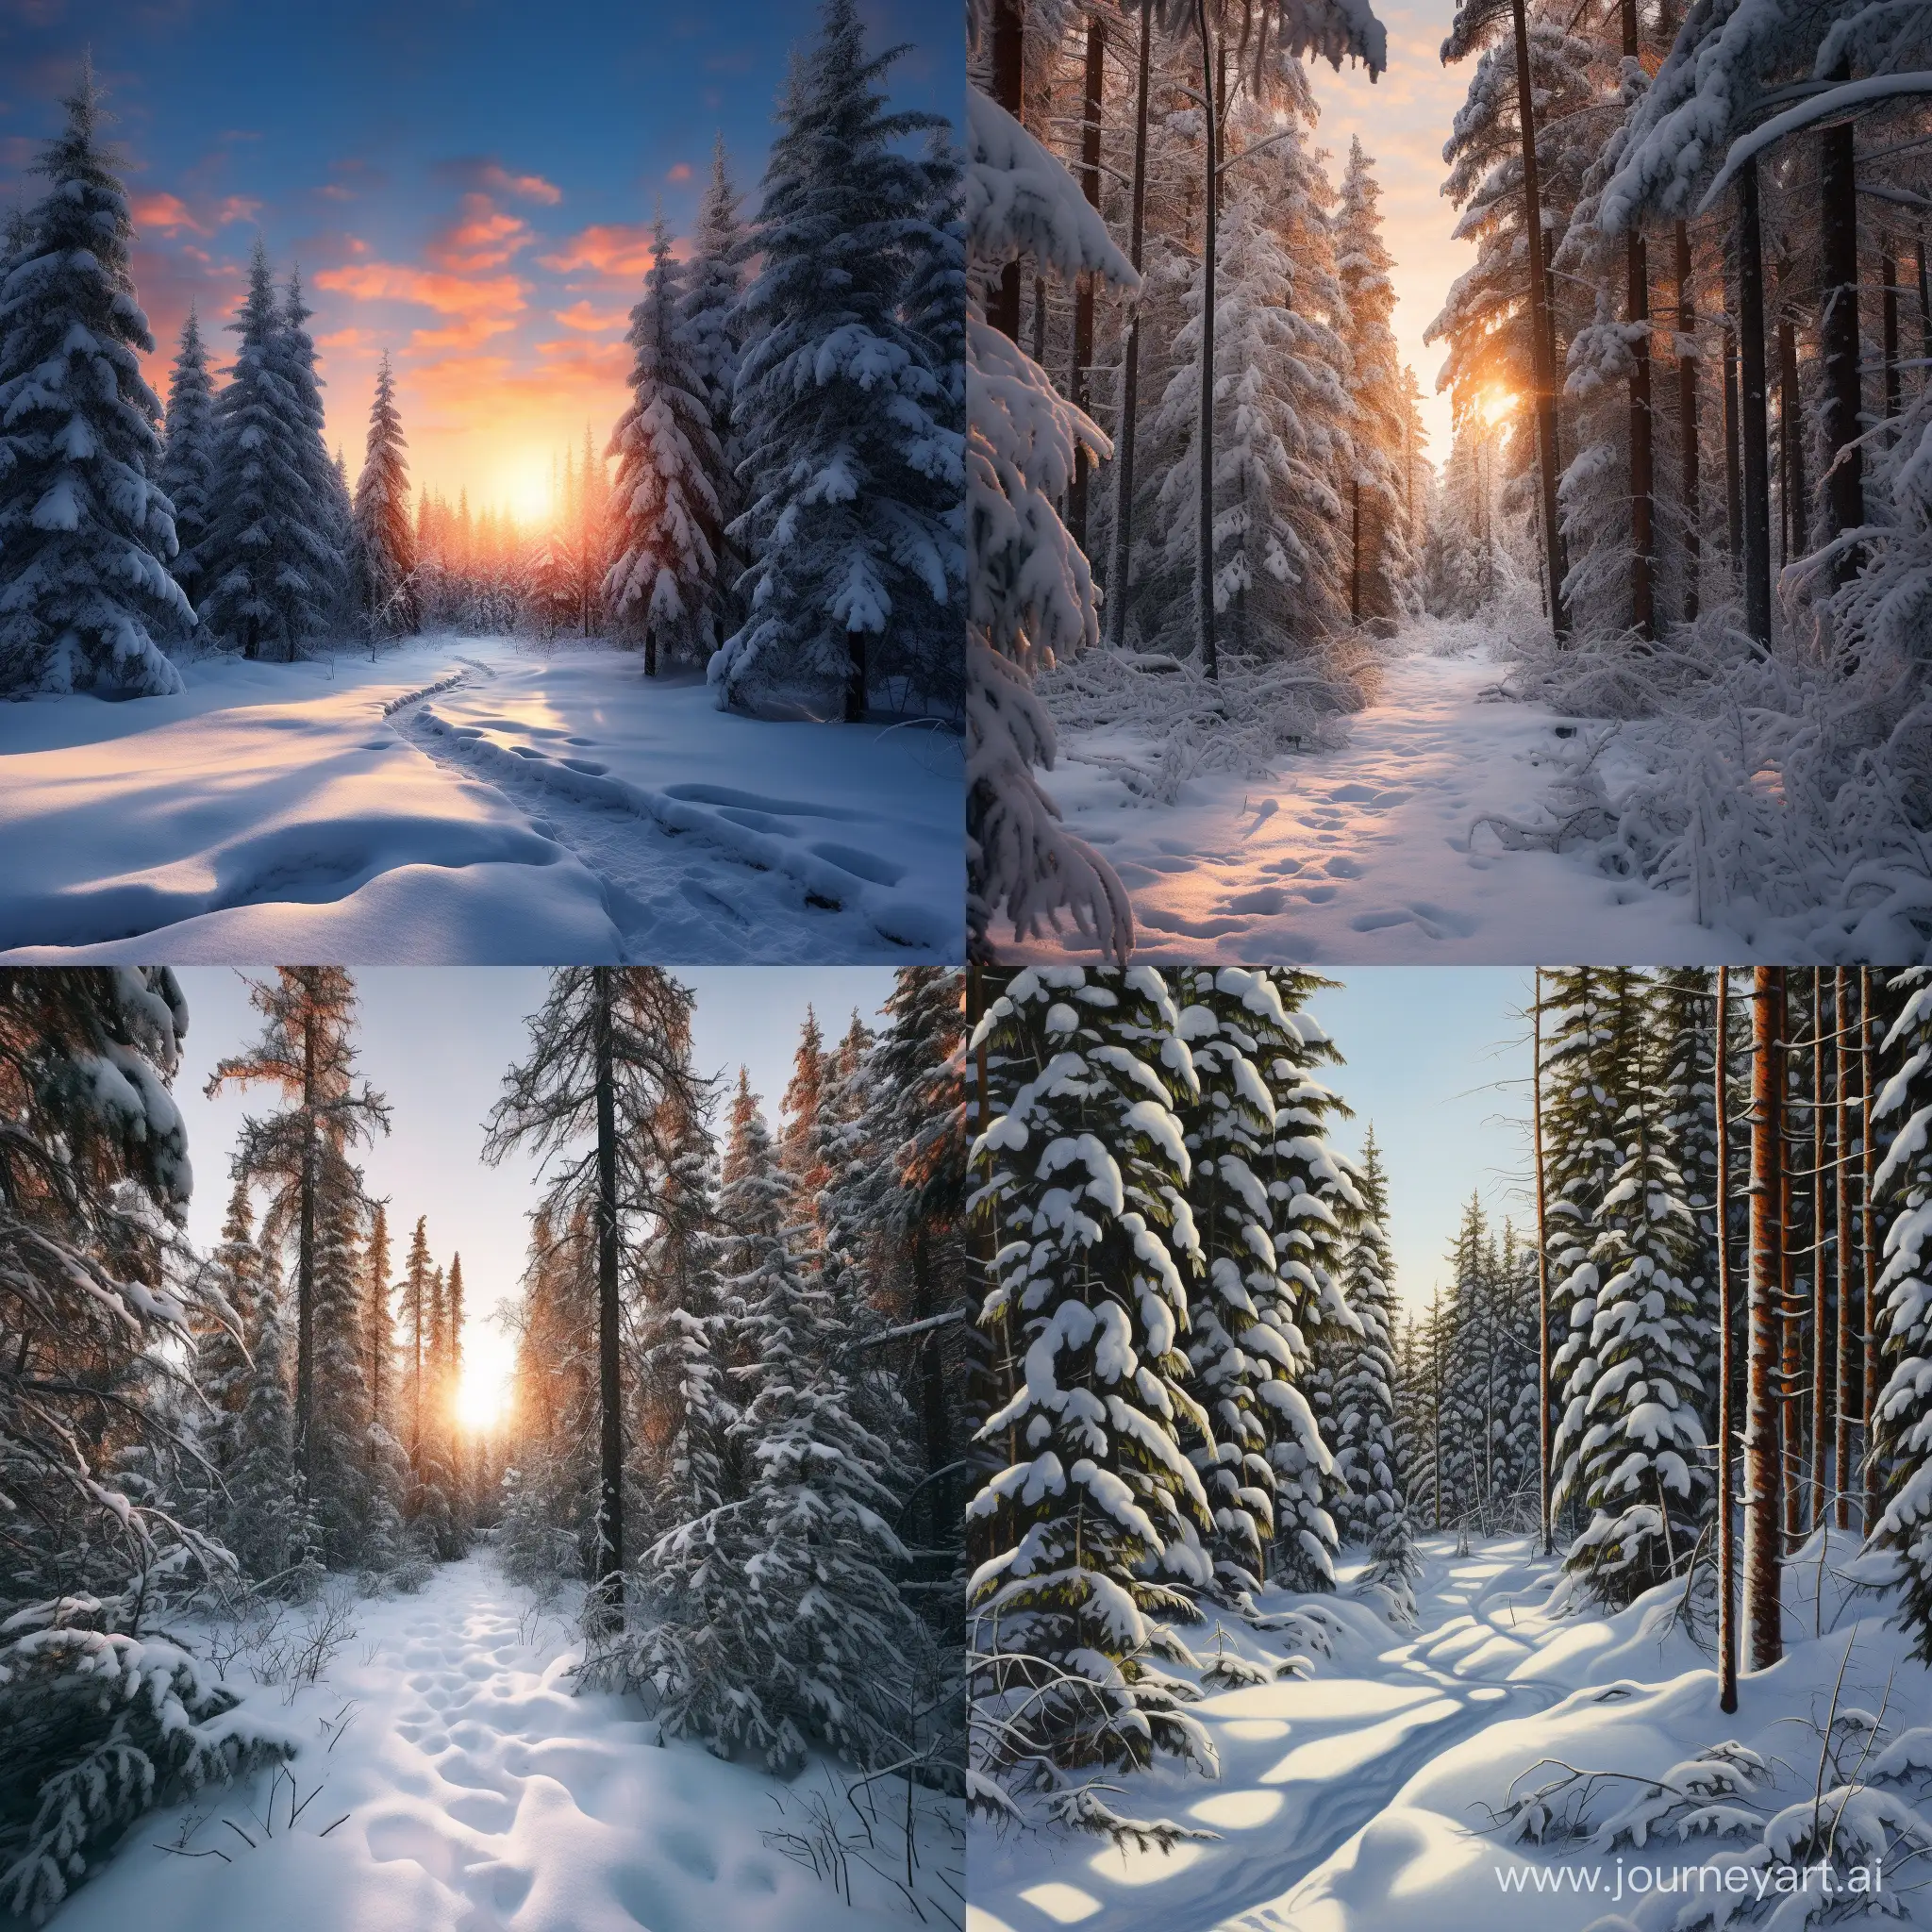 Заснеженный зимний лес, ели, пихты, сосны, кедры, мягкое освещение